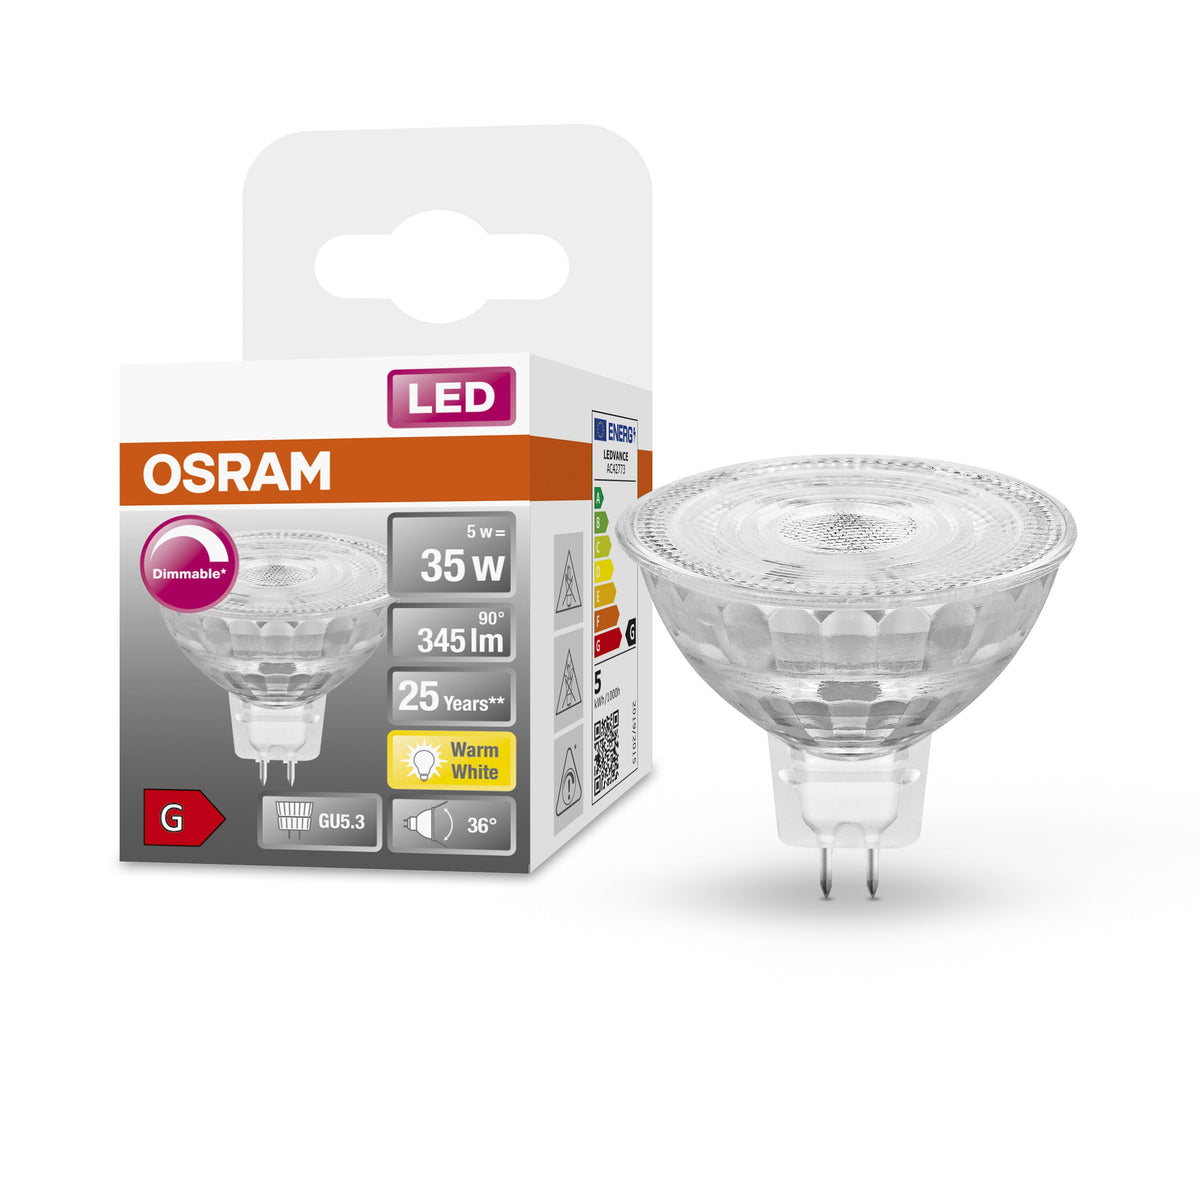 Lampada con riflettore OSRAM Superstar per attacco GU5.3, vetro trasparente, bianco caldo (2700K), 345 lumen, ricambio per lampadine convenzionali da 35 W, dimmerabile, confezione da 1